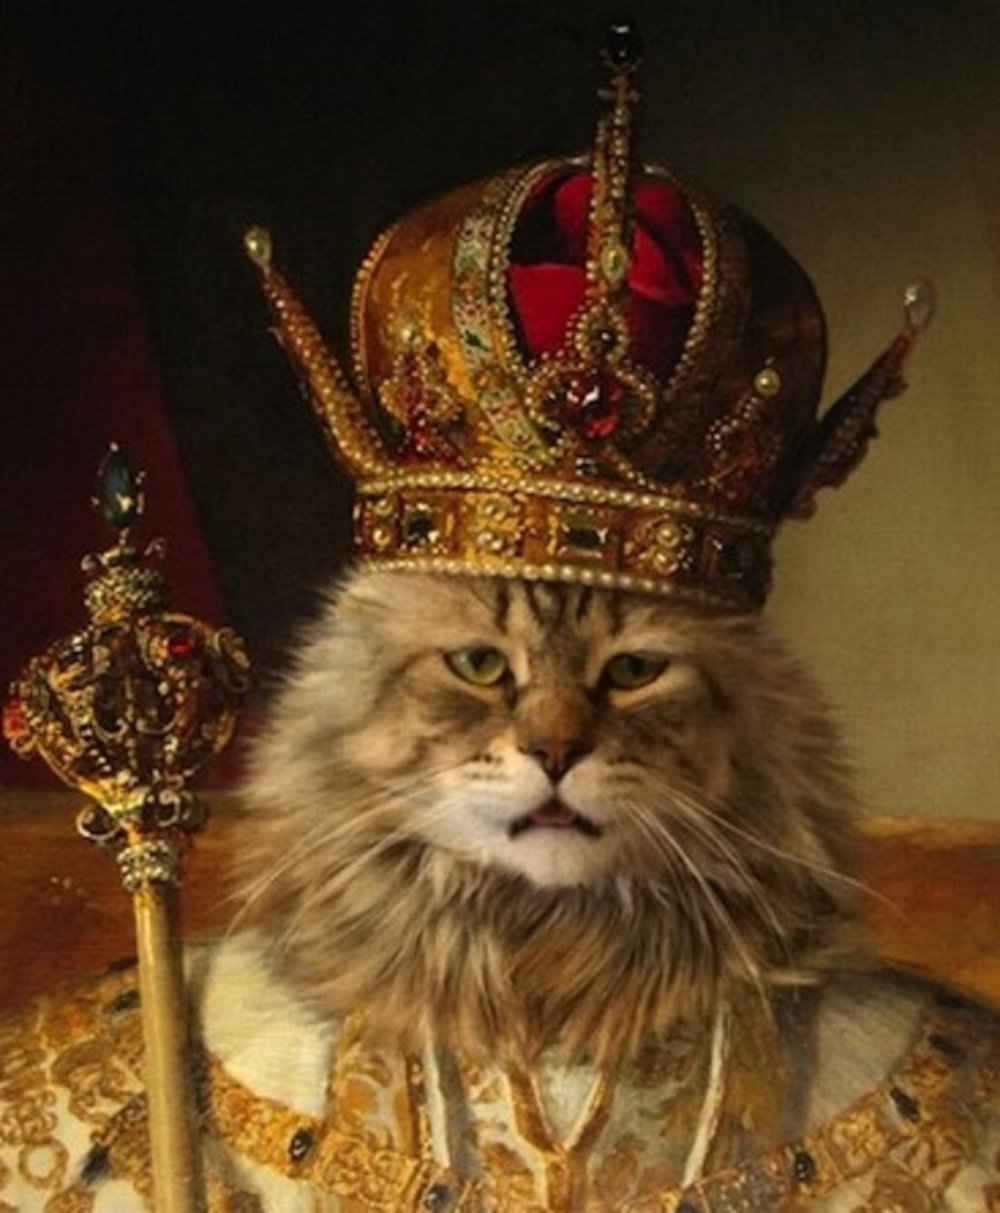 Кот царя Алексея Михайловича портрет